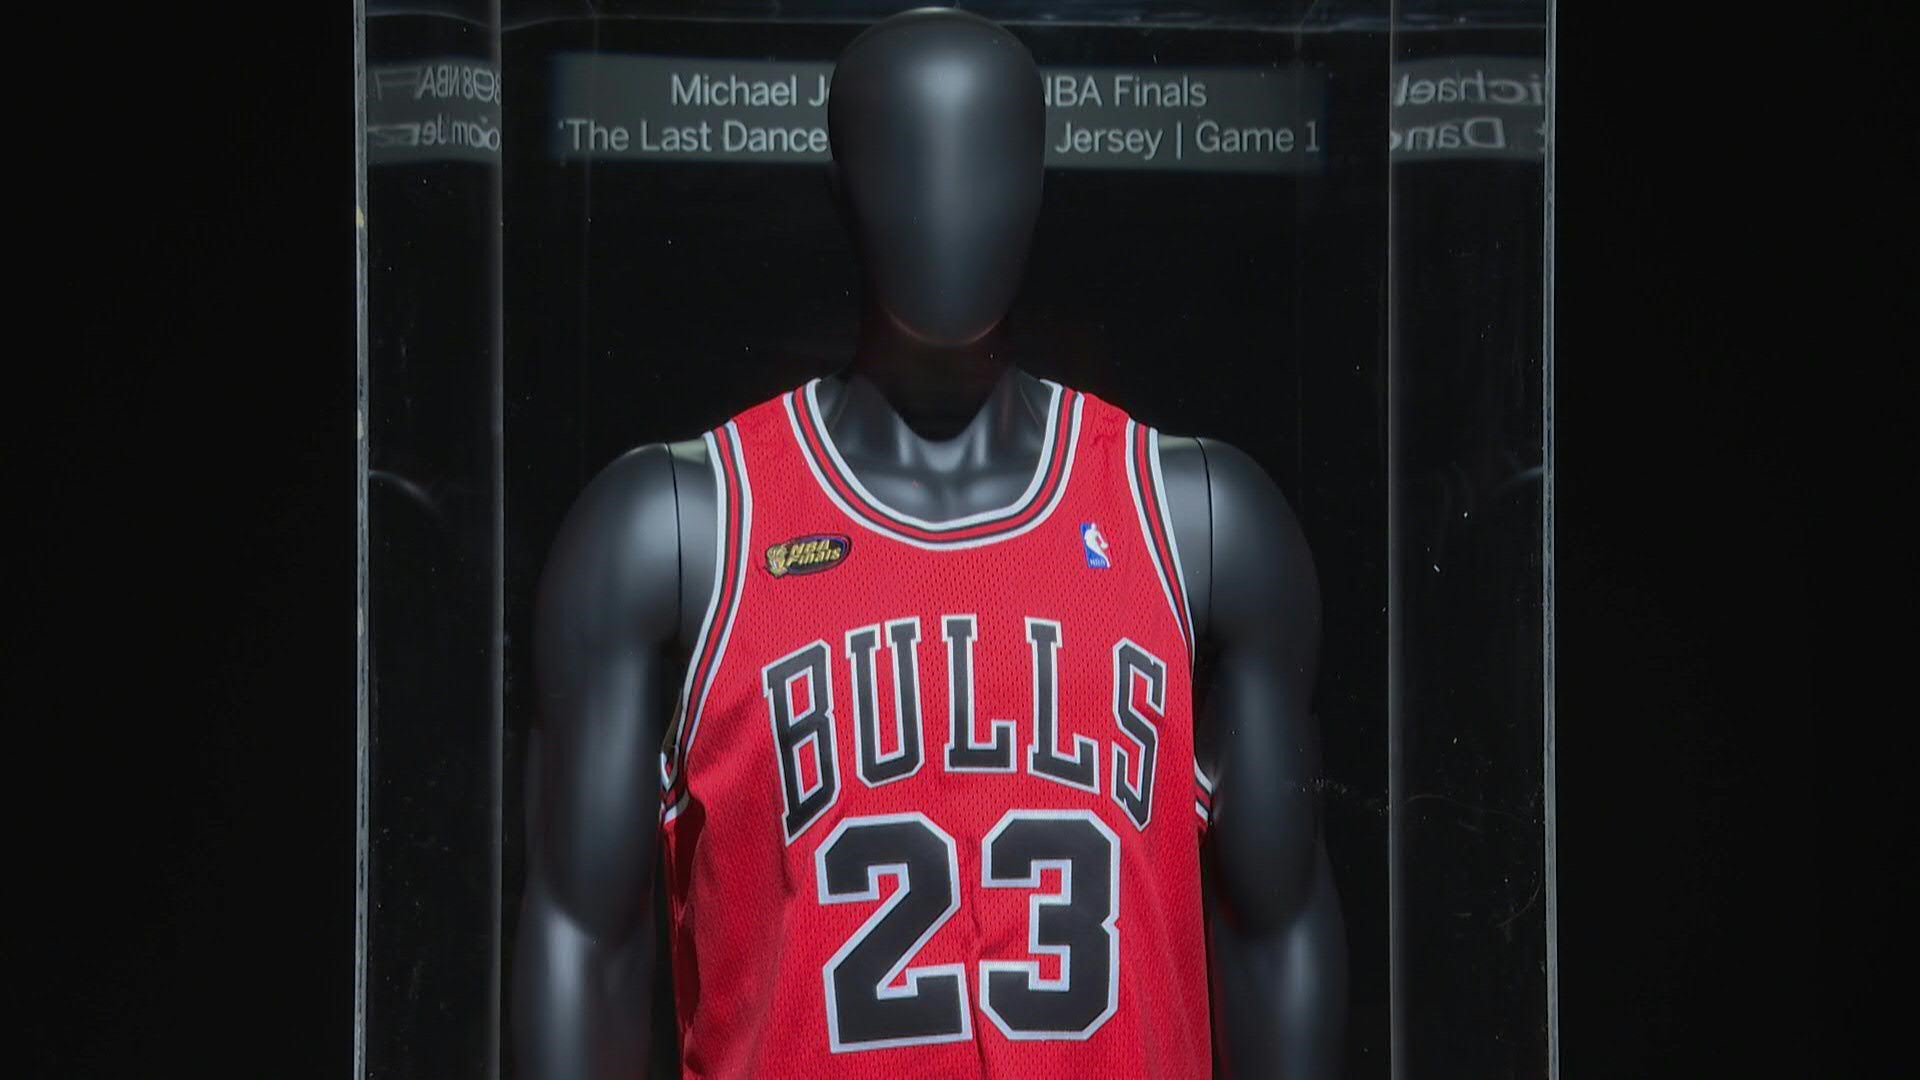 Una camiseta usada por el legendario Michael Jordan durante el primer partido de las Finales de la NBA de 1998, en las que conquistó su último anillo con los Chicago Bulls, fue vendida el jueves por un récord de 10,1 millones de dólares, anunció Sotheby's.